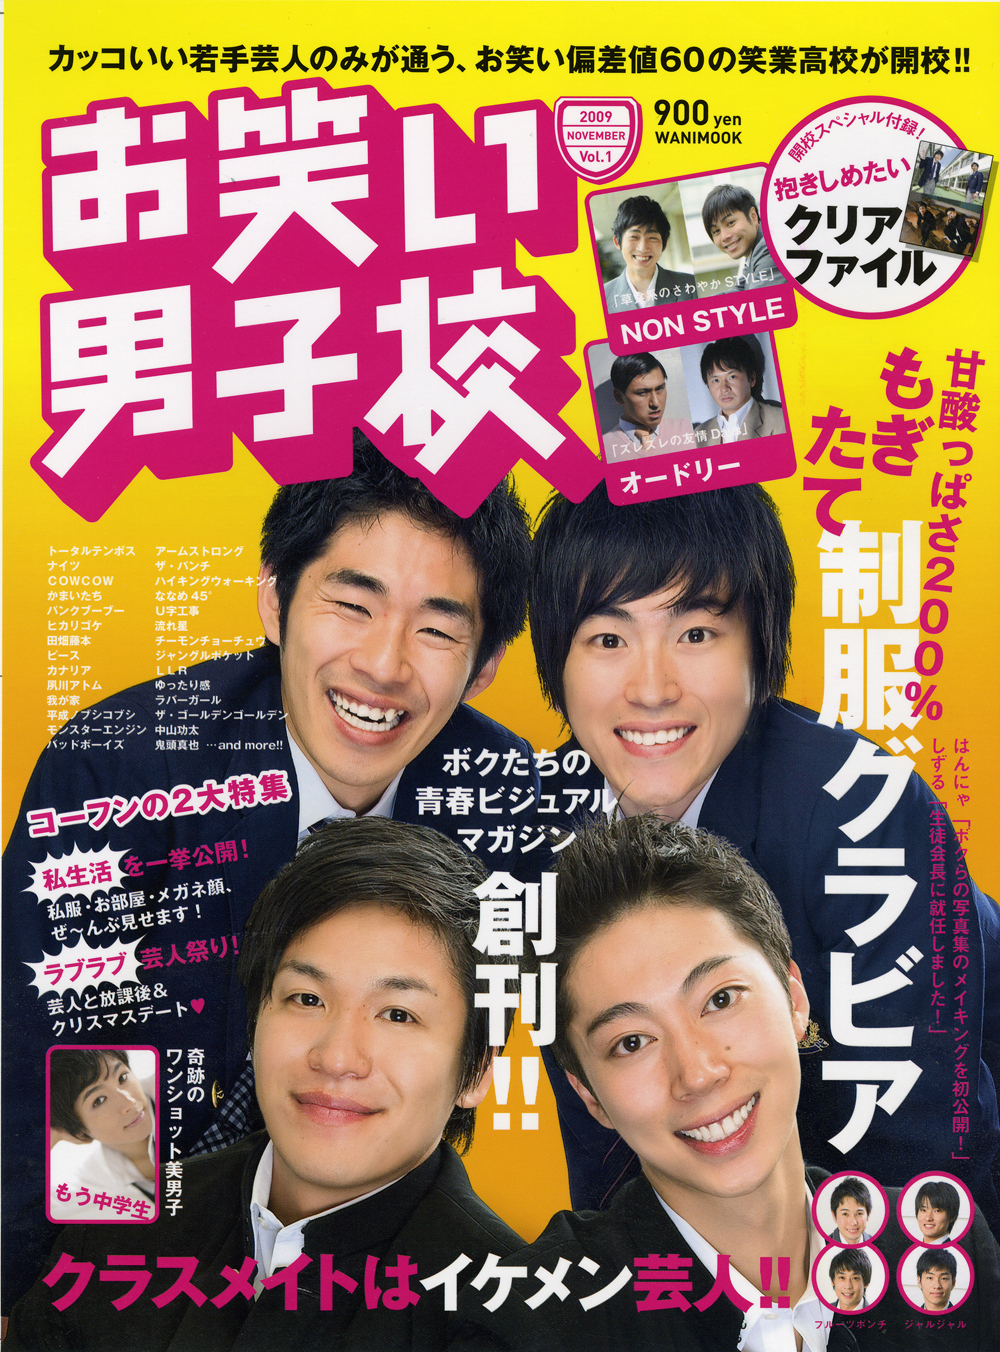 イケメン若手芸人だけの男子校に潜入 はんにゃ しずる フルポンらの制服姿に萌えるグラビア誌創刊 Oricon News